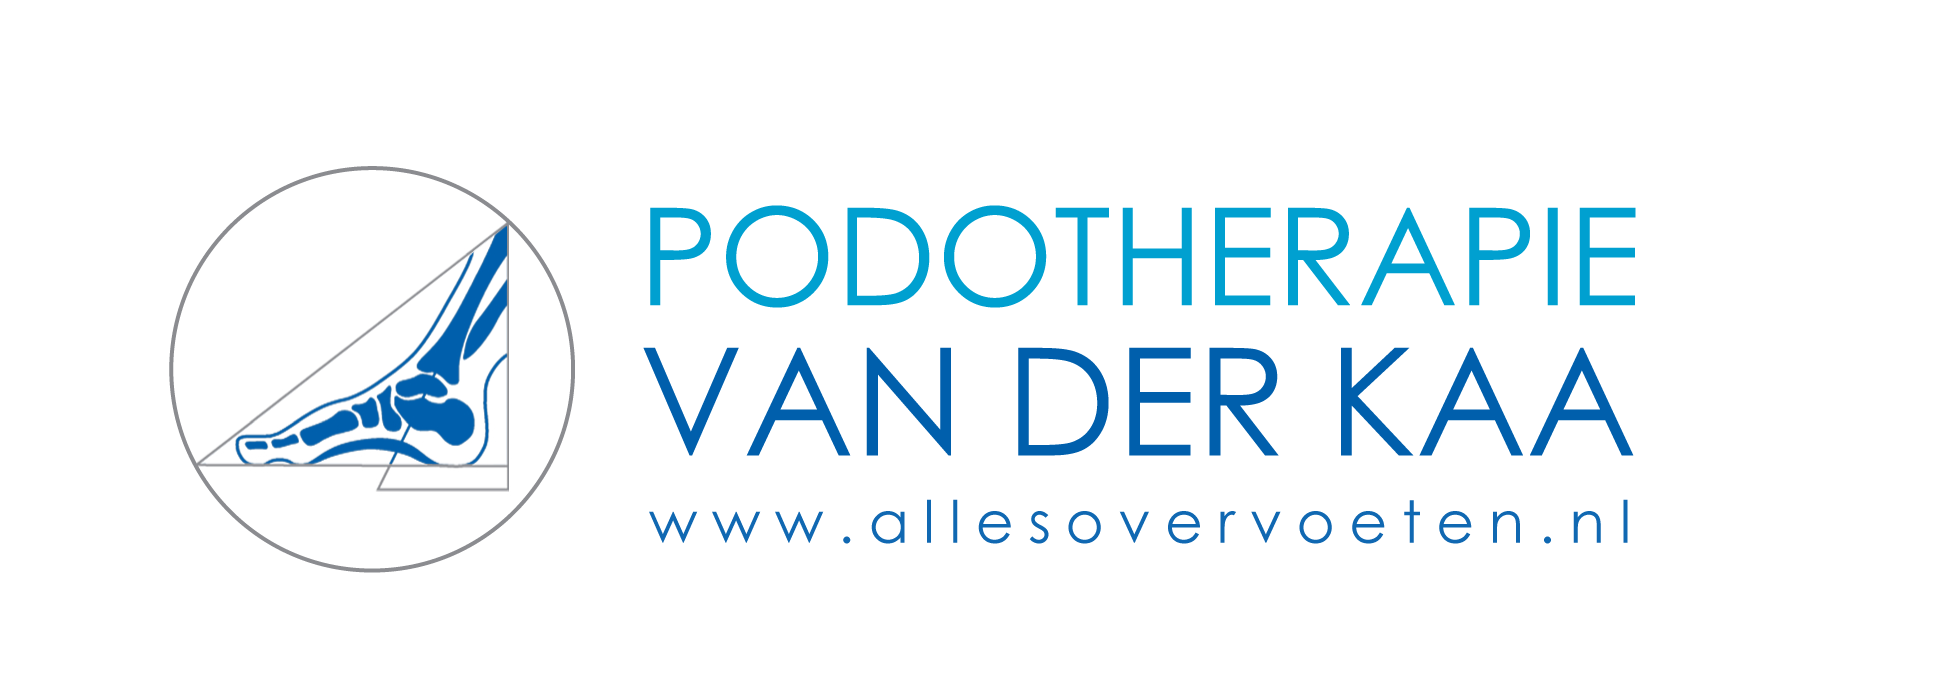 Podotherapie Van der Kaa